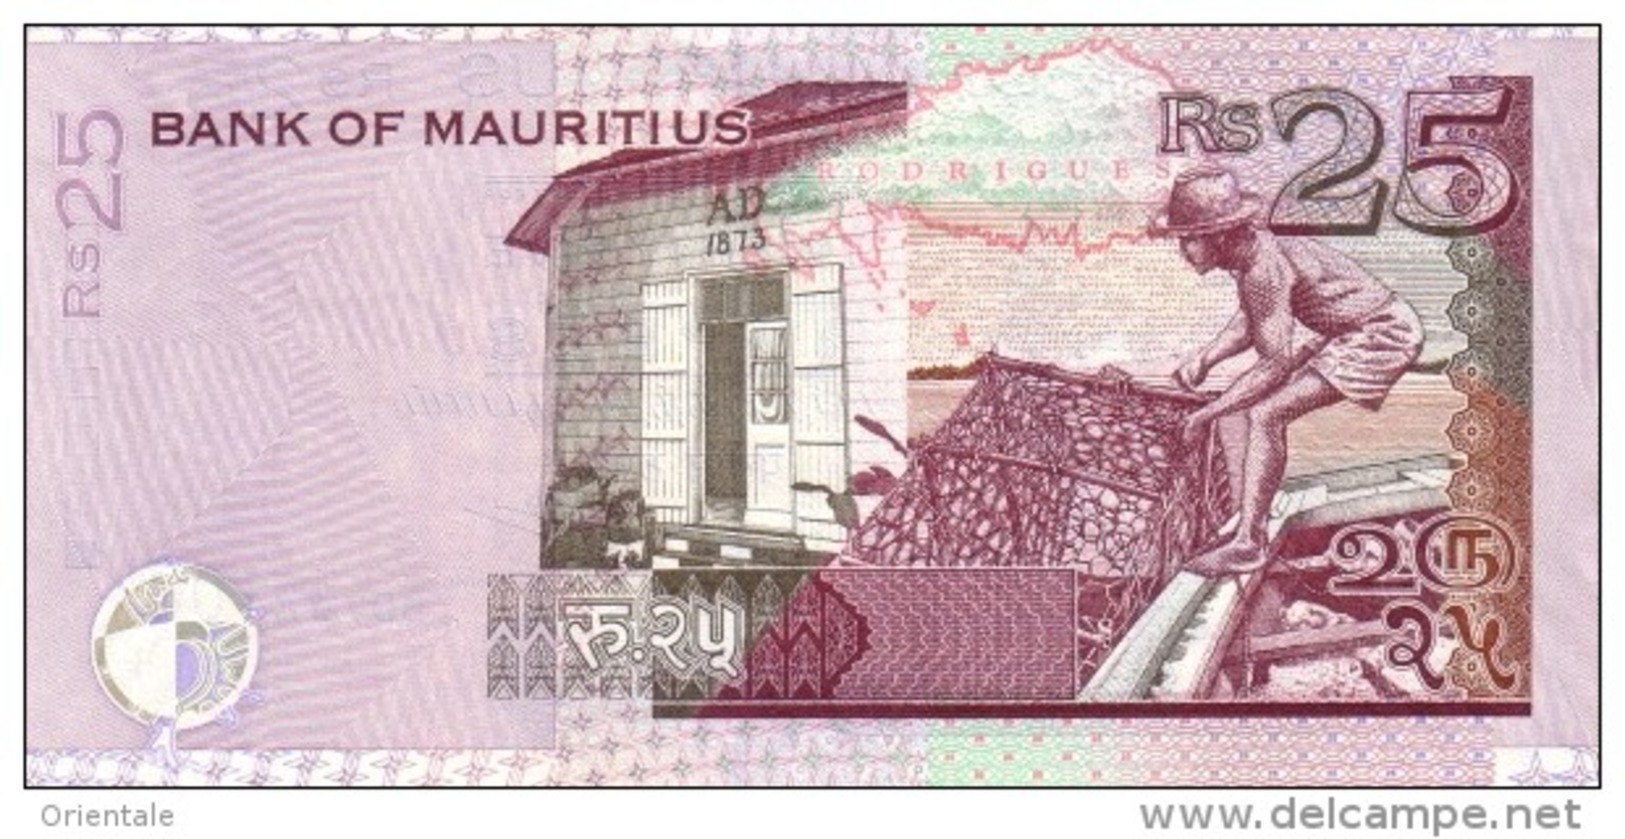 MAURITIUS P. 49d 25 R 2009 UNC - Mauritius